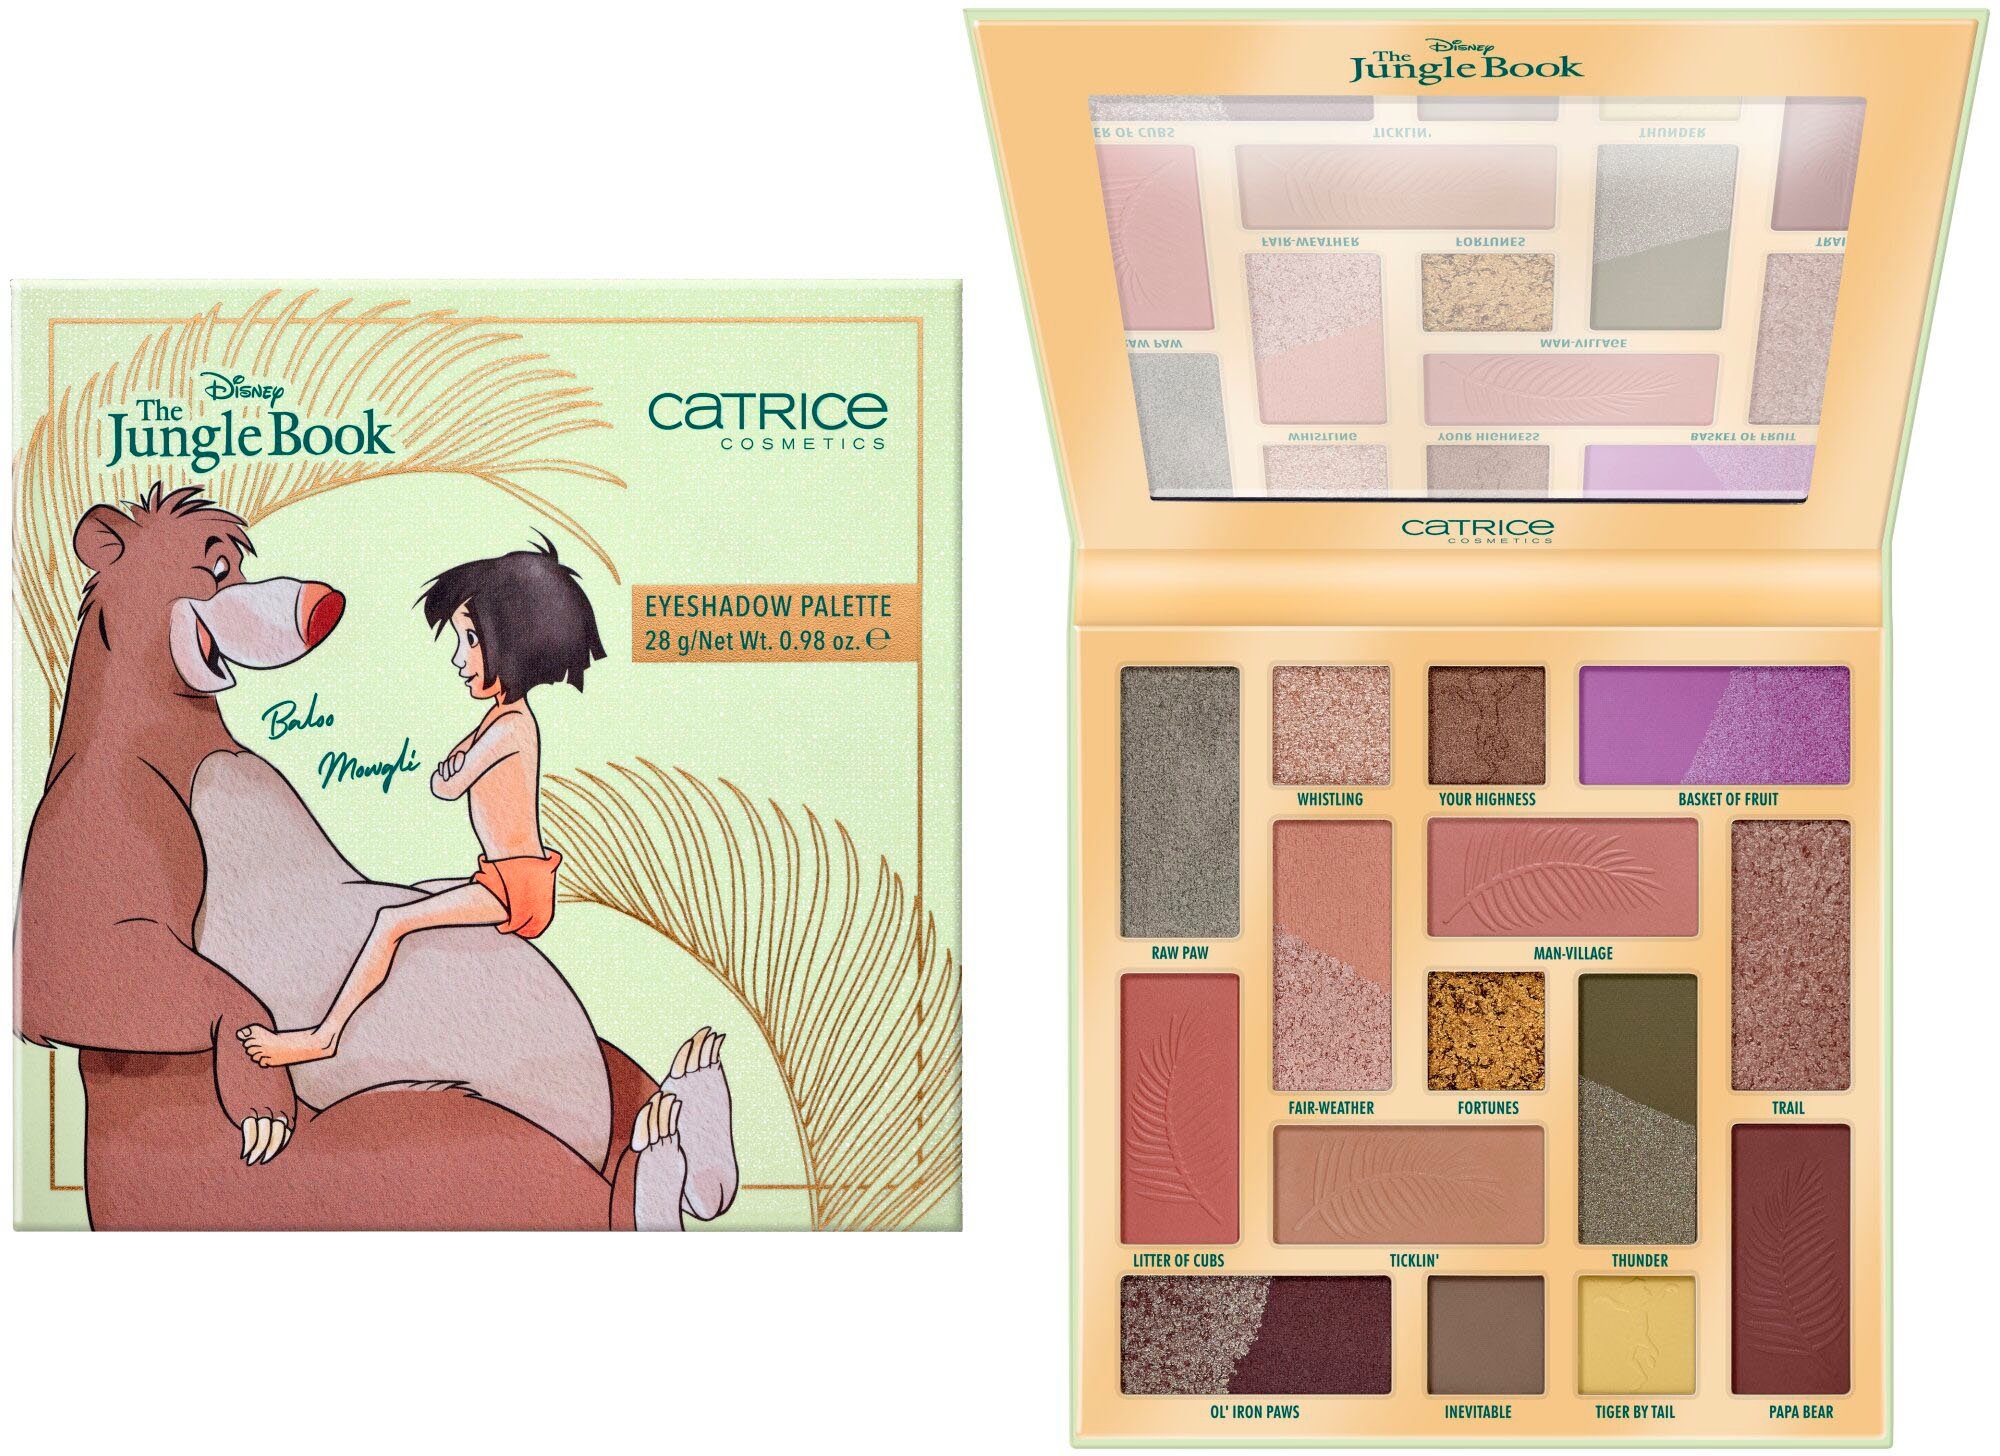 Catrice Lidschatten-Palette Disney The Jungle Book Eyeshadow Palette | Lidschatten